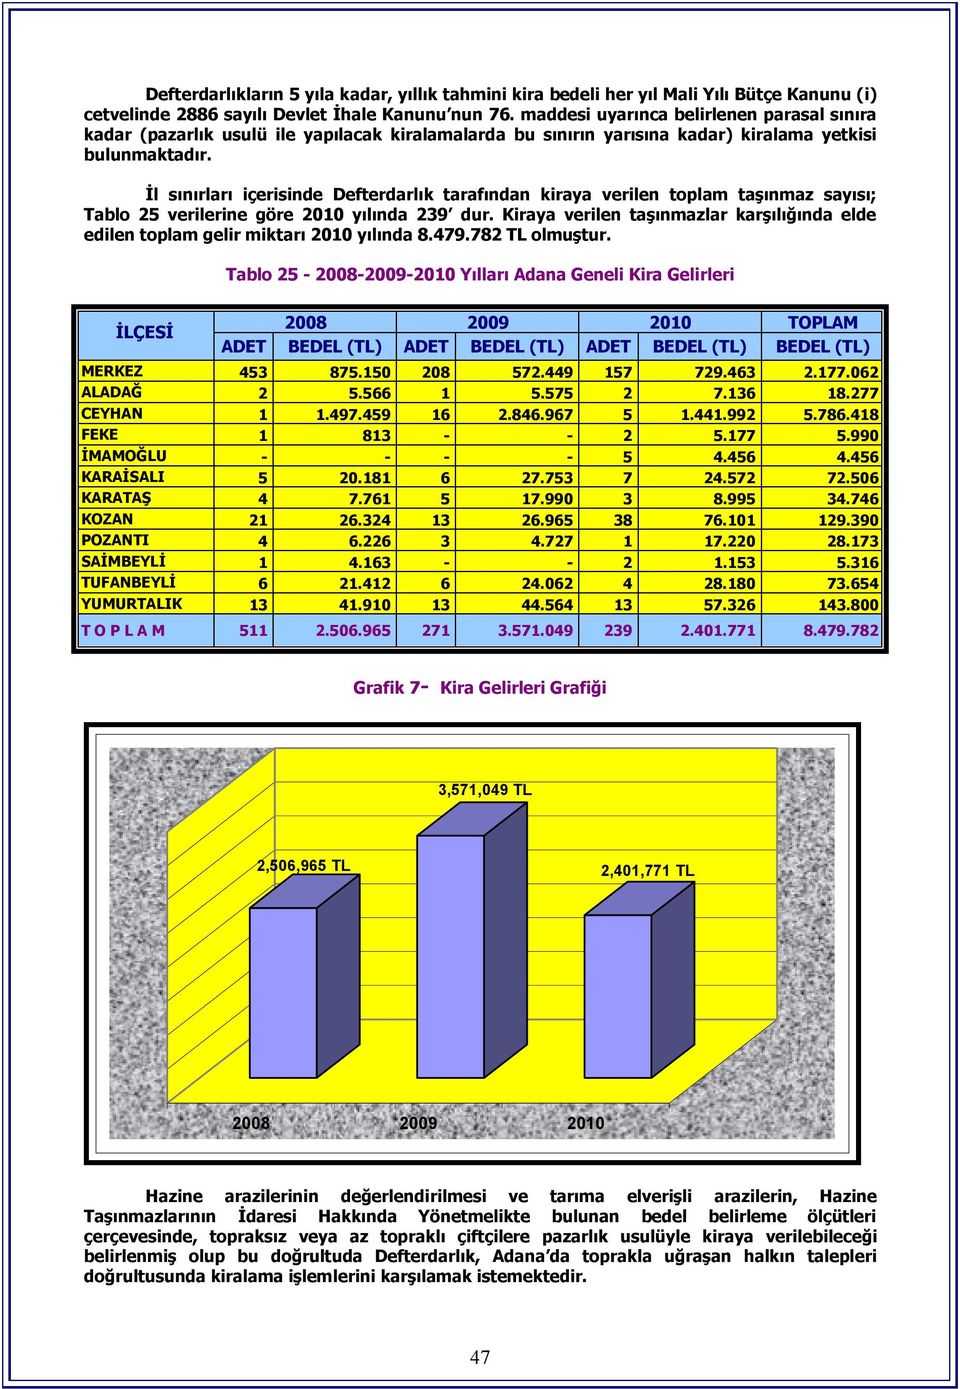 İl sınırları içerisinde Defterdarlık tarafından kiraya verilen toplam sayısı; Tablo 25 verilerine göre 2010 yılında 239 dur.